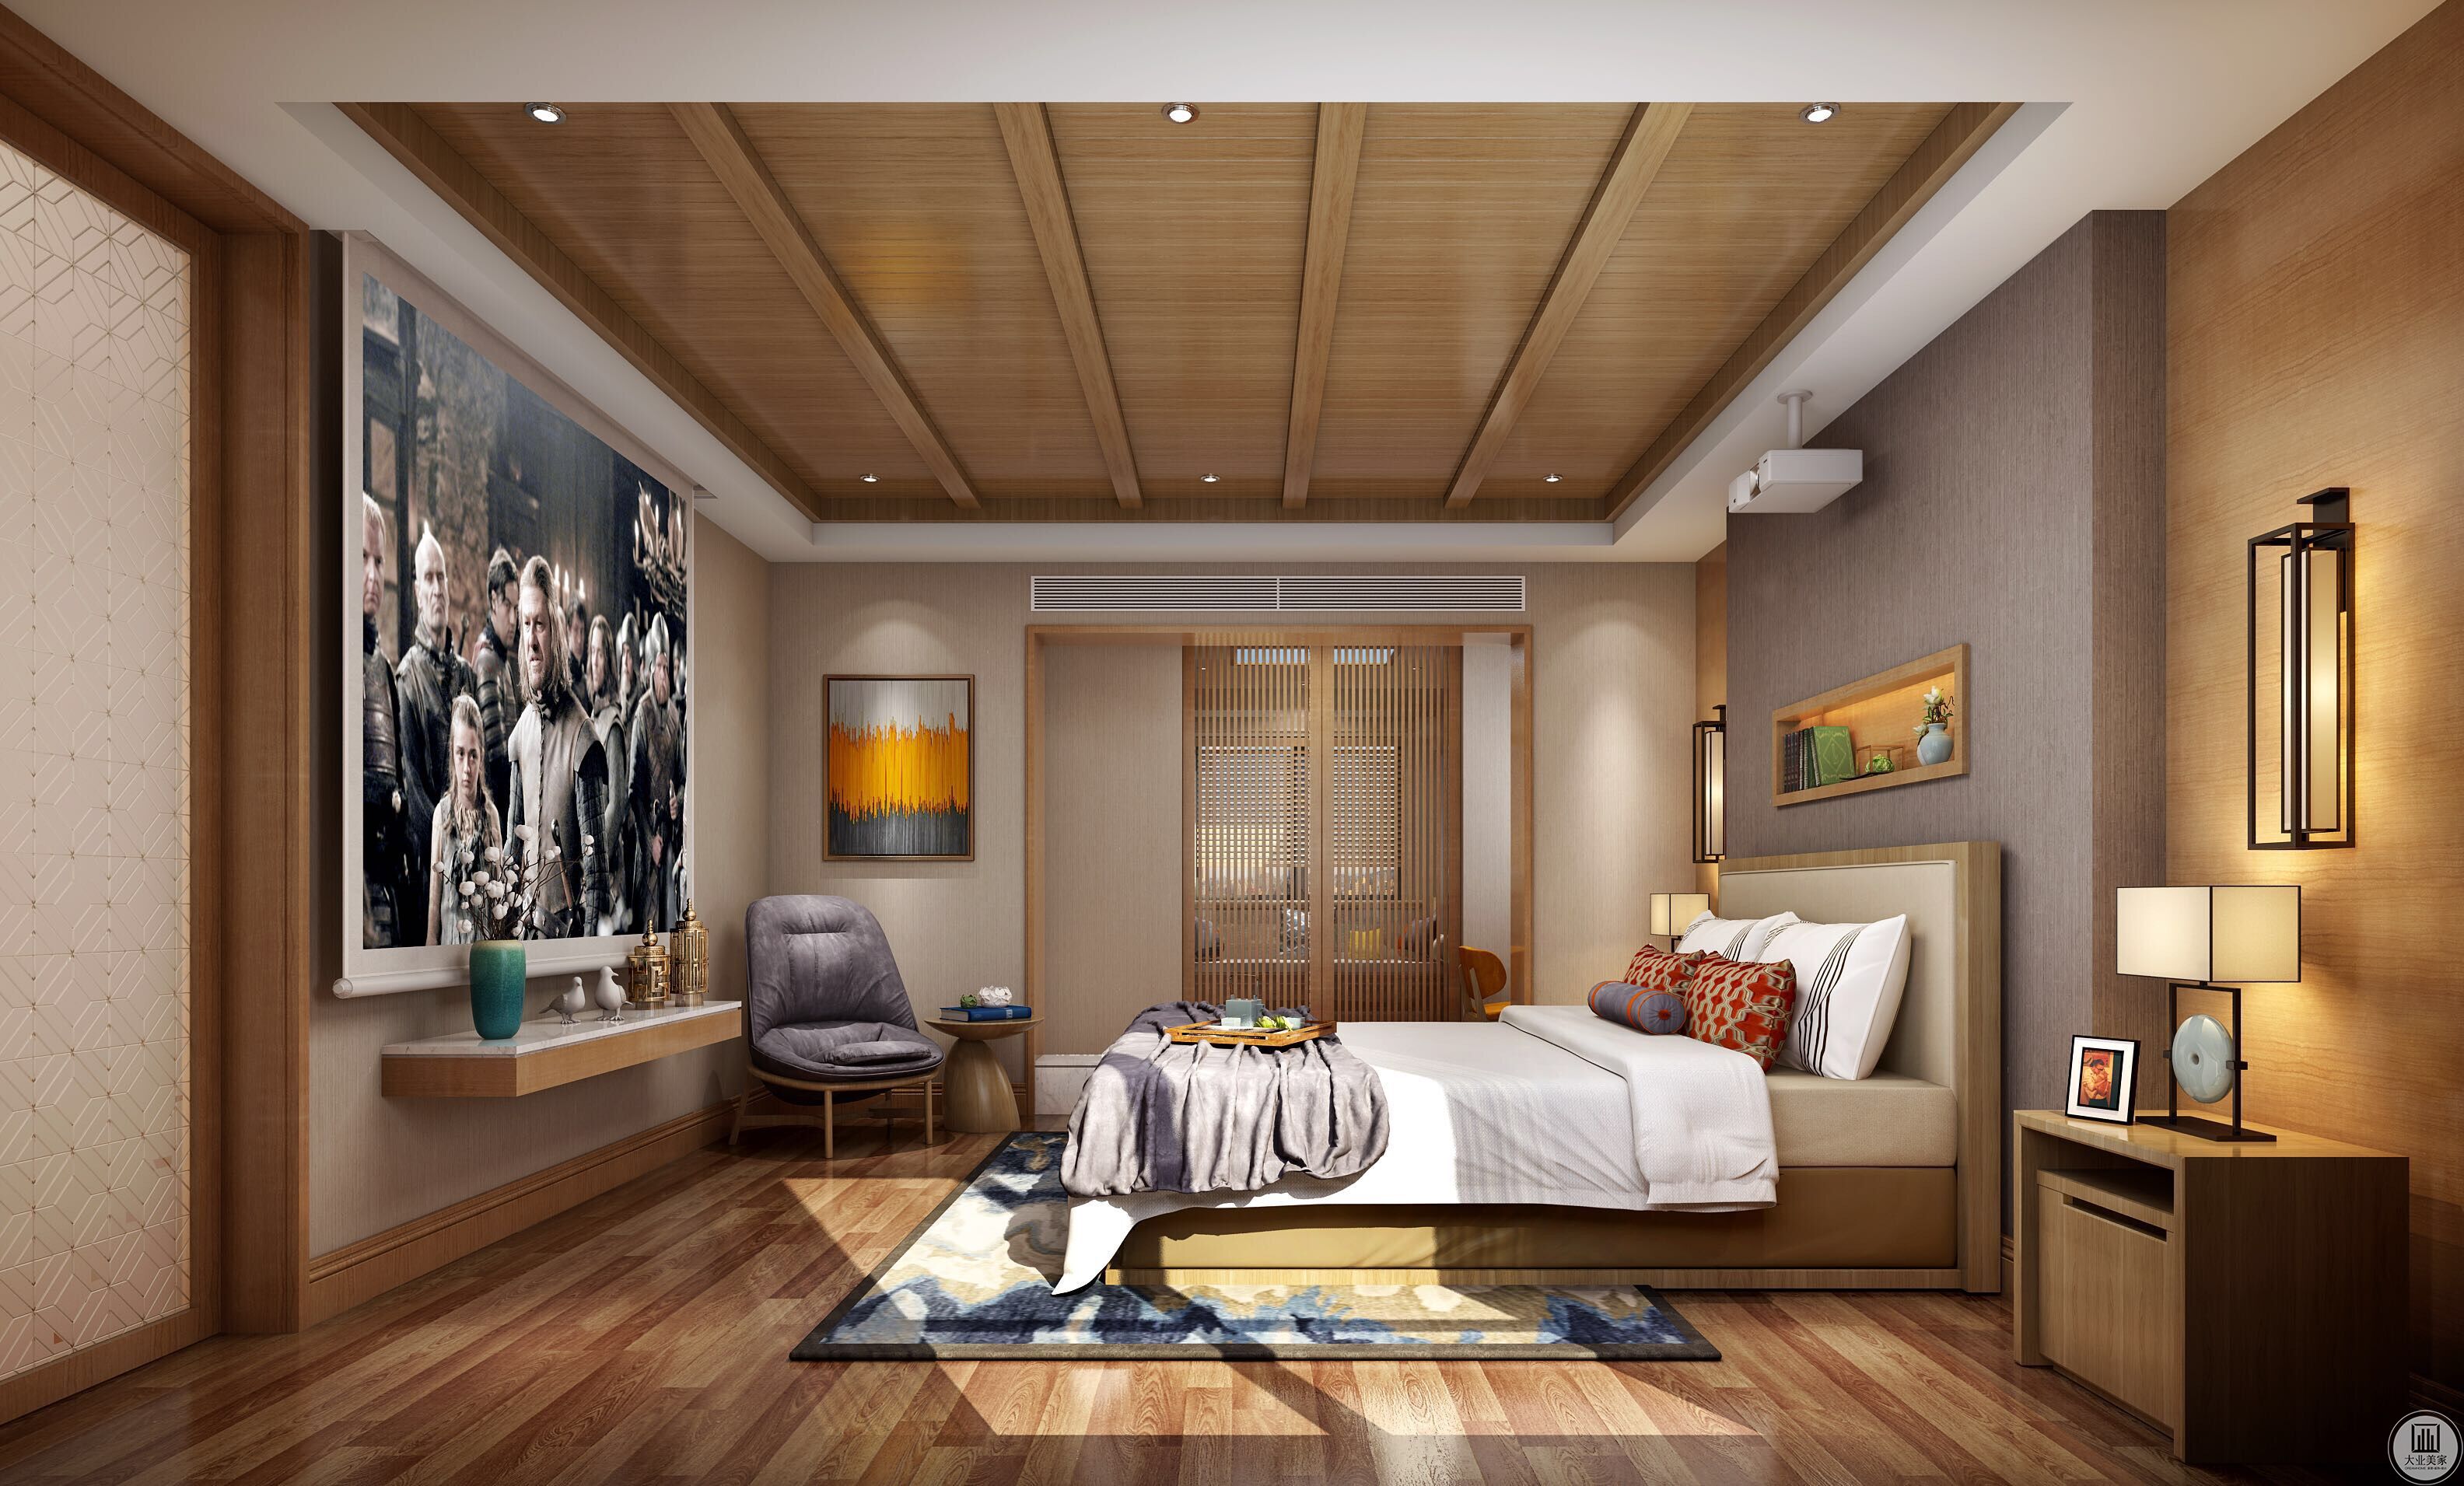 卧室设计通过暖墙纸，空间将至关重要。顶面采用木贴面天花处理，增强视觉效果，同时配合定制家具配套。地板铺上暖色系地板，增加卧室的安静舒适感。